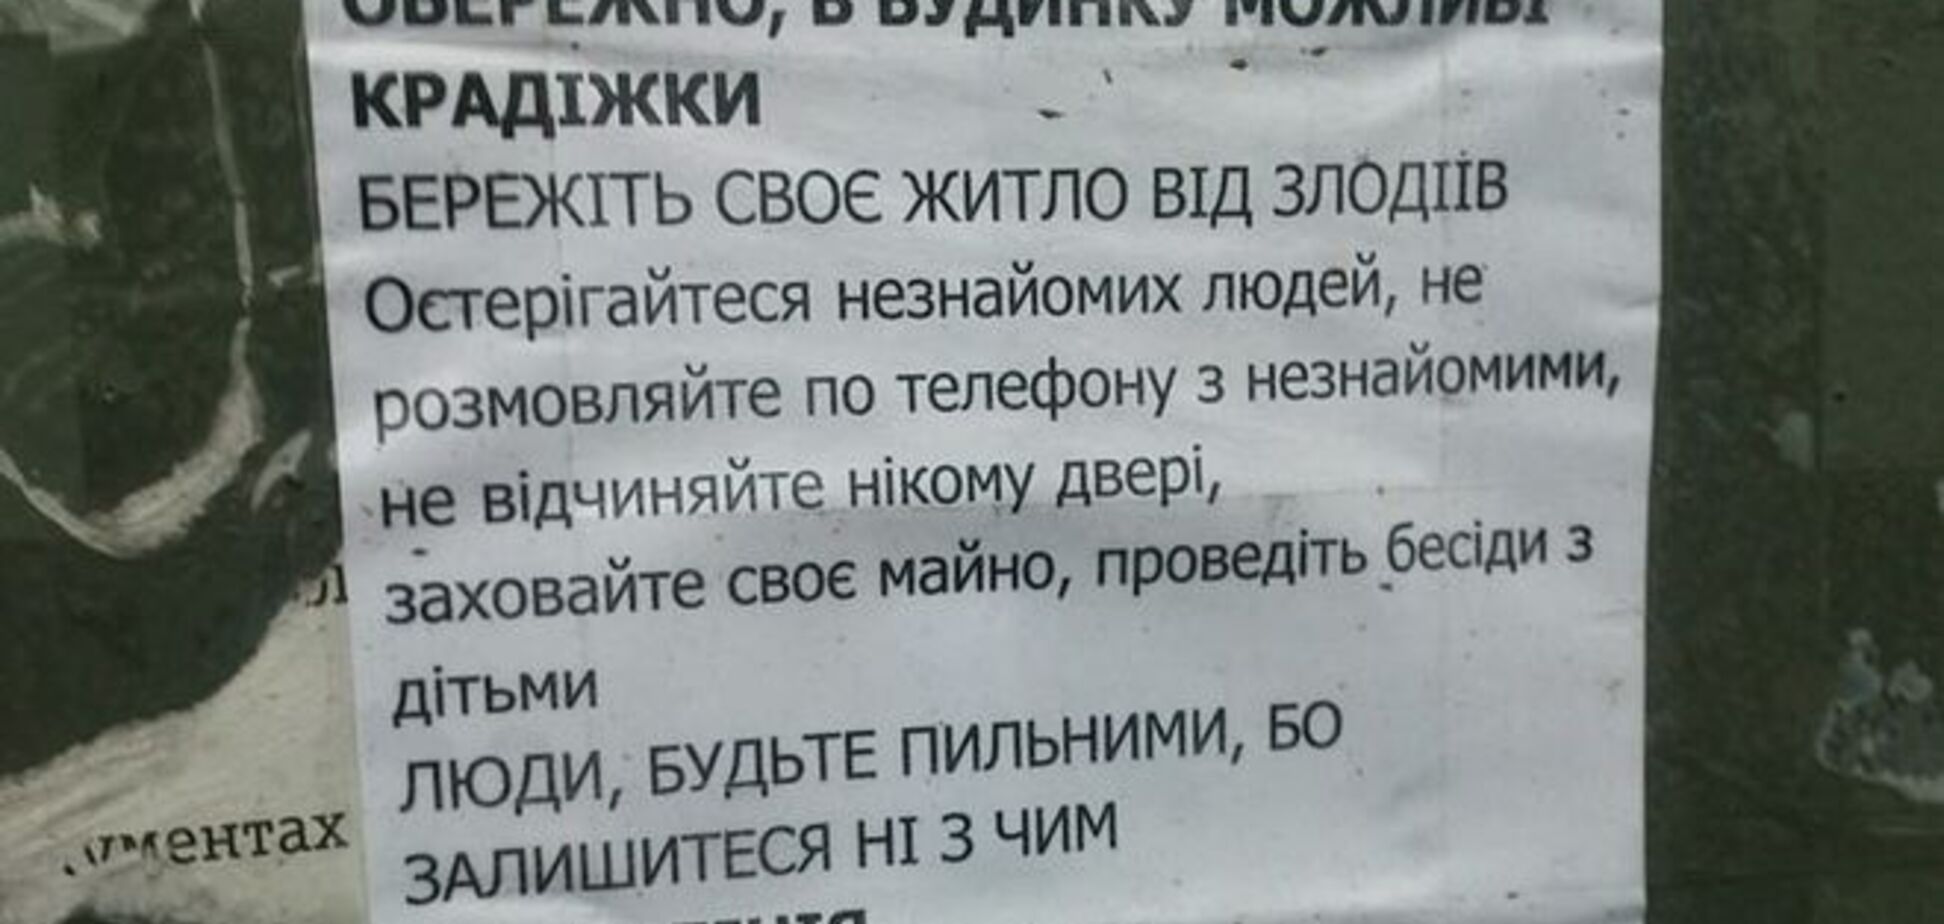 На домах в Киеве появились объявления-предупреждения о кражах